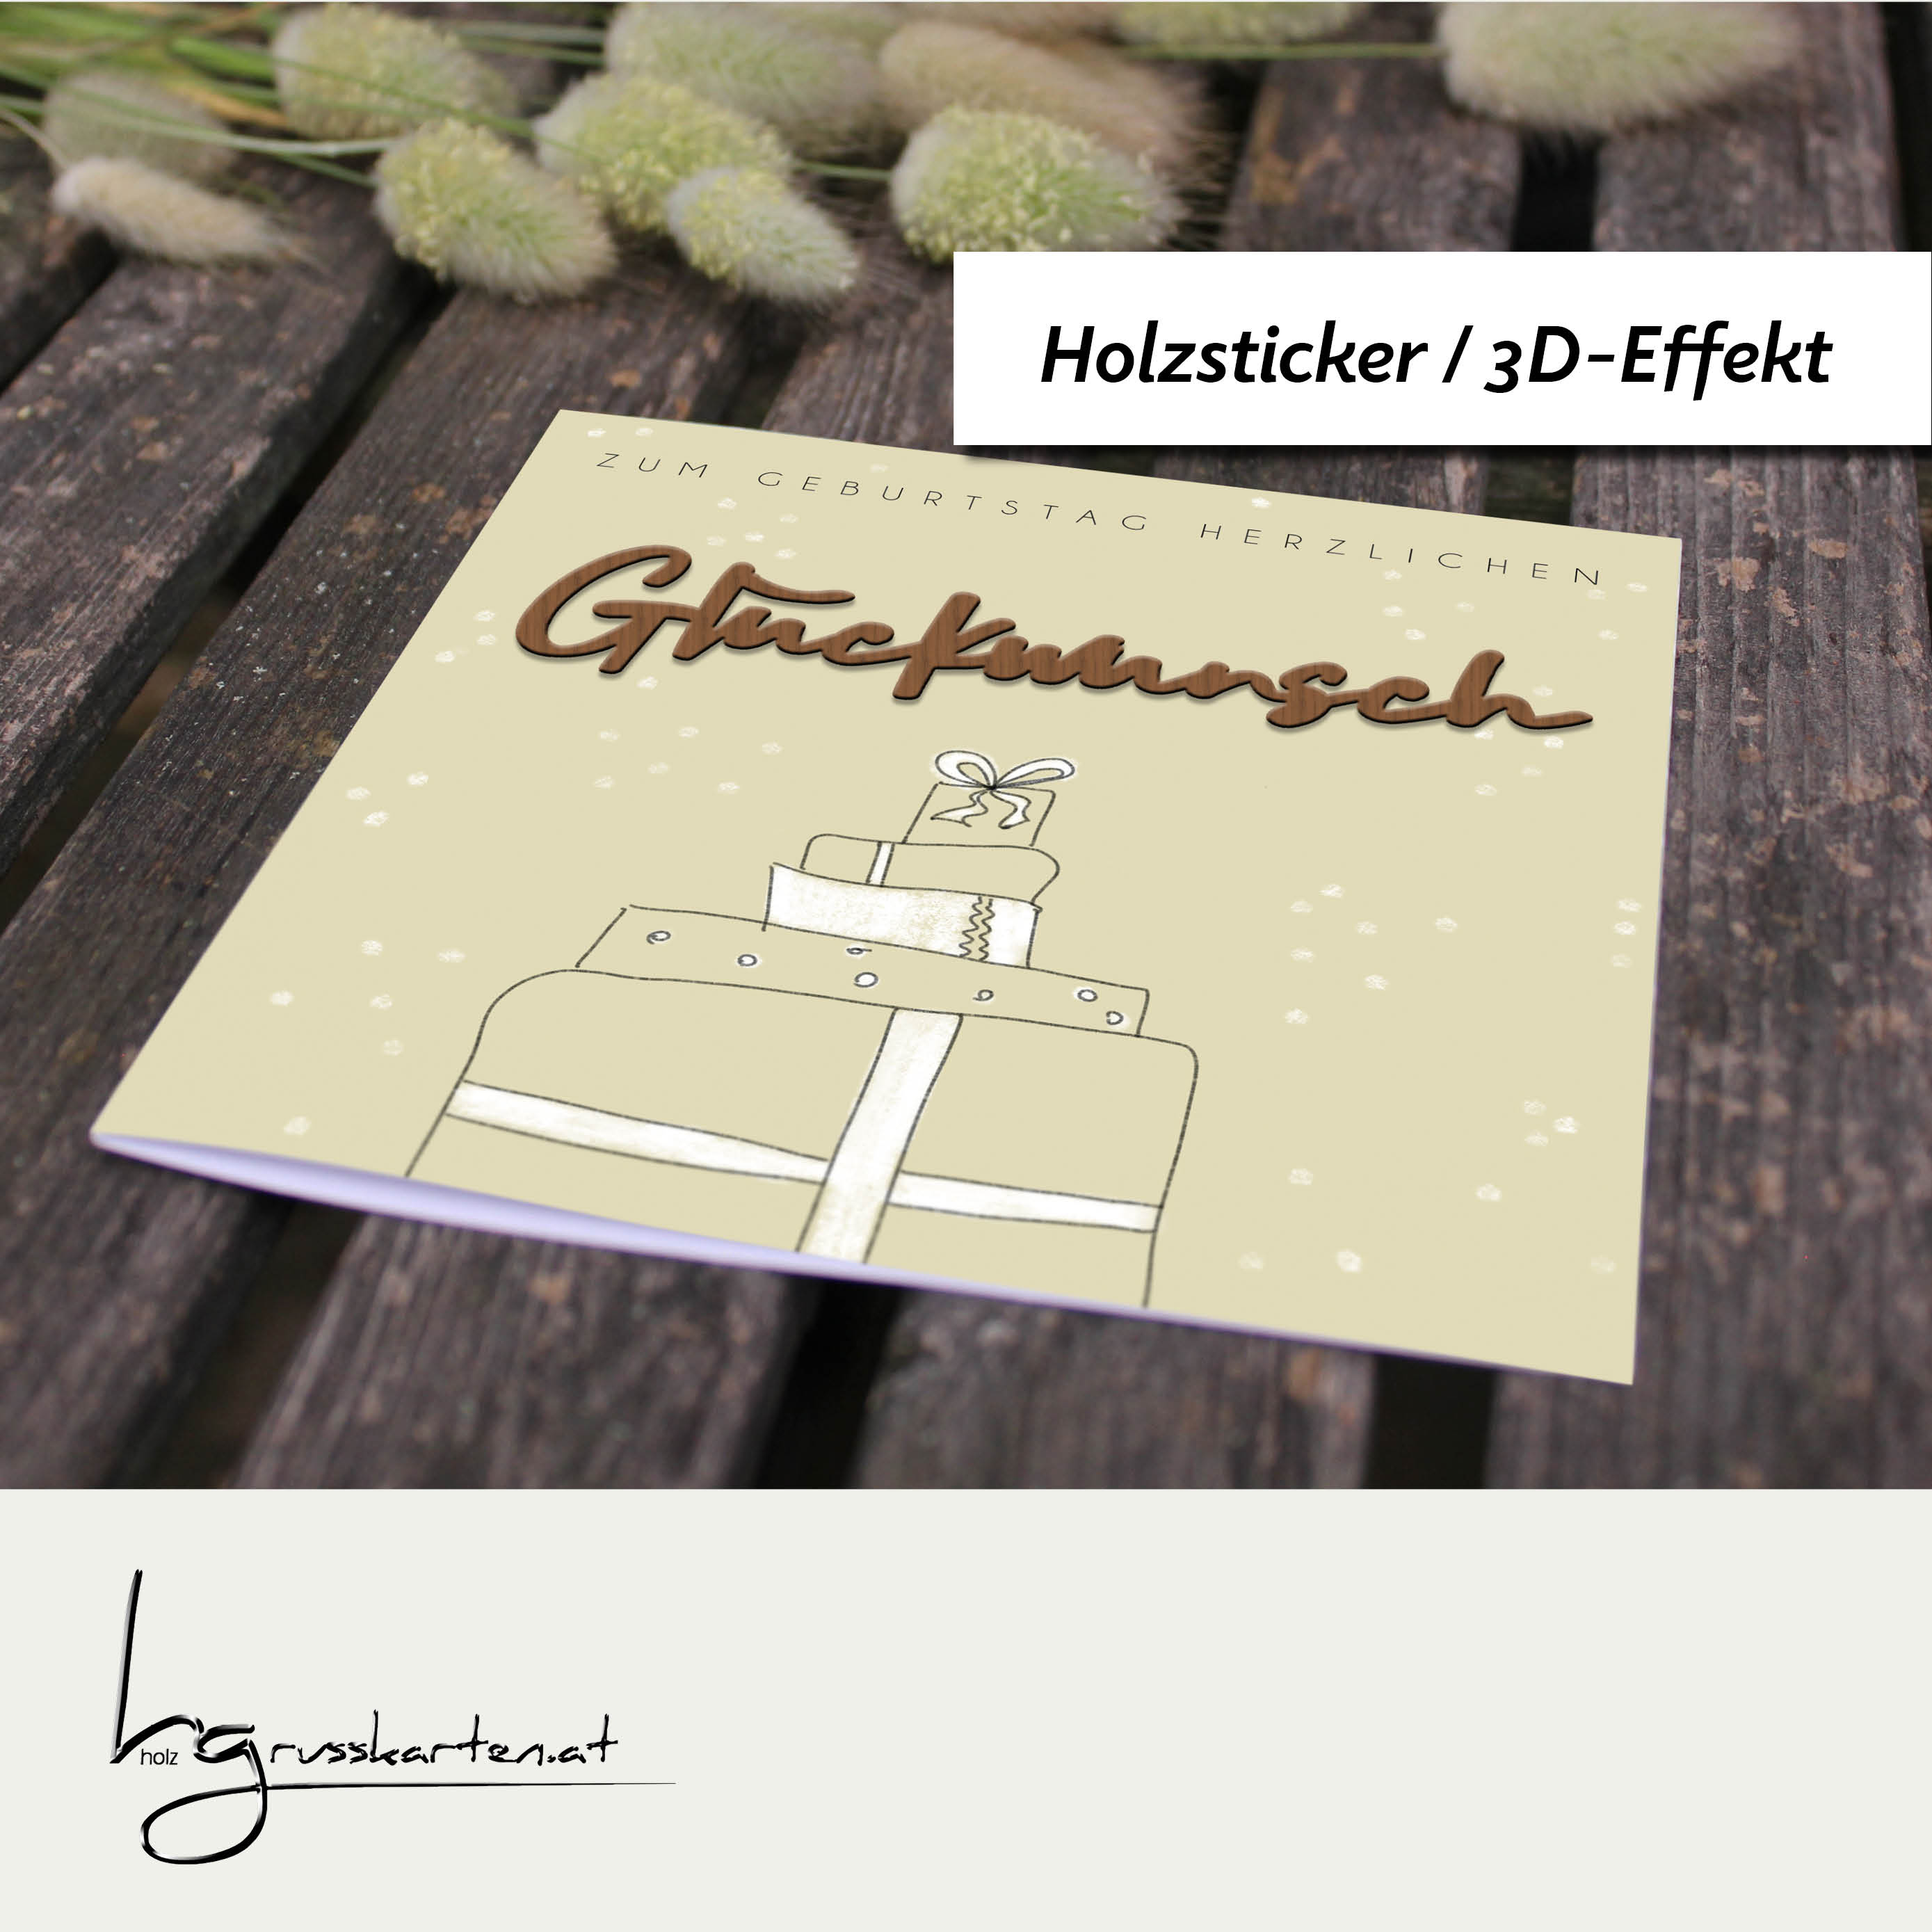 Holzgrusskarten - Geburtstagskarte "Geschenkpakete - Zum Geburtstag herzlichen" aus Recyclingkarton mit aufgeklebtem "Glückwunsch" aus Nussholz